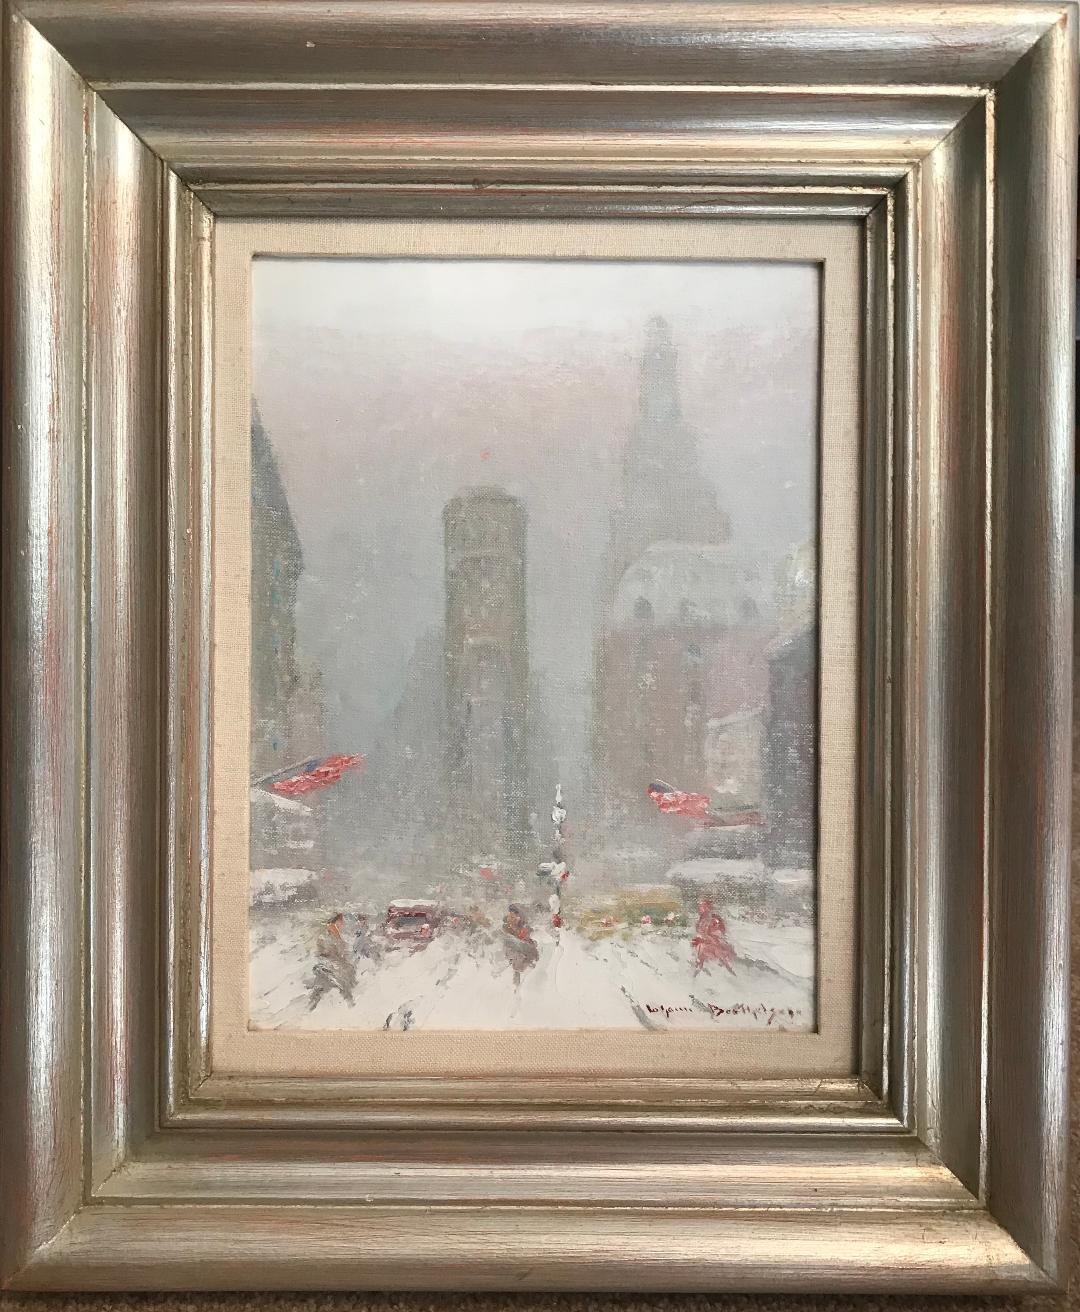 Une peinture à l'huile sur panneau de l'artiste Johann Berthelsen qui présente une vue de Times Square en hiver.  New York City. L'image de la peinture mesure 12 x 9 environ 16 x 12 encadrée telle quelle. Elle a été nettoyée et vernie sans